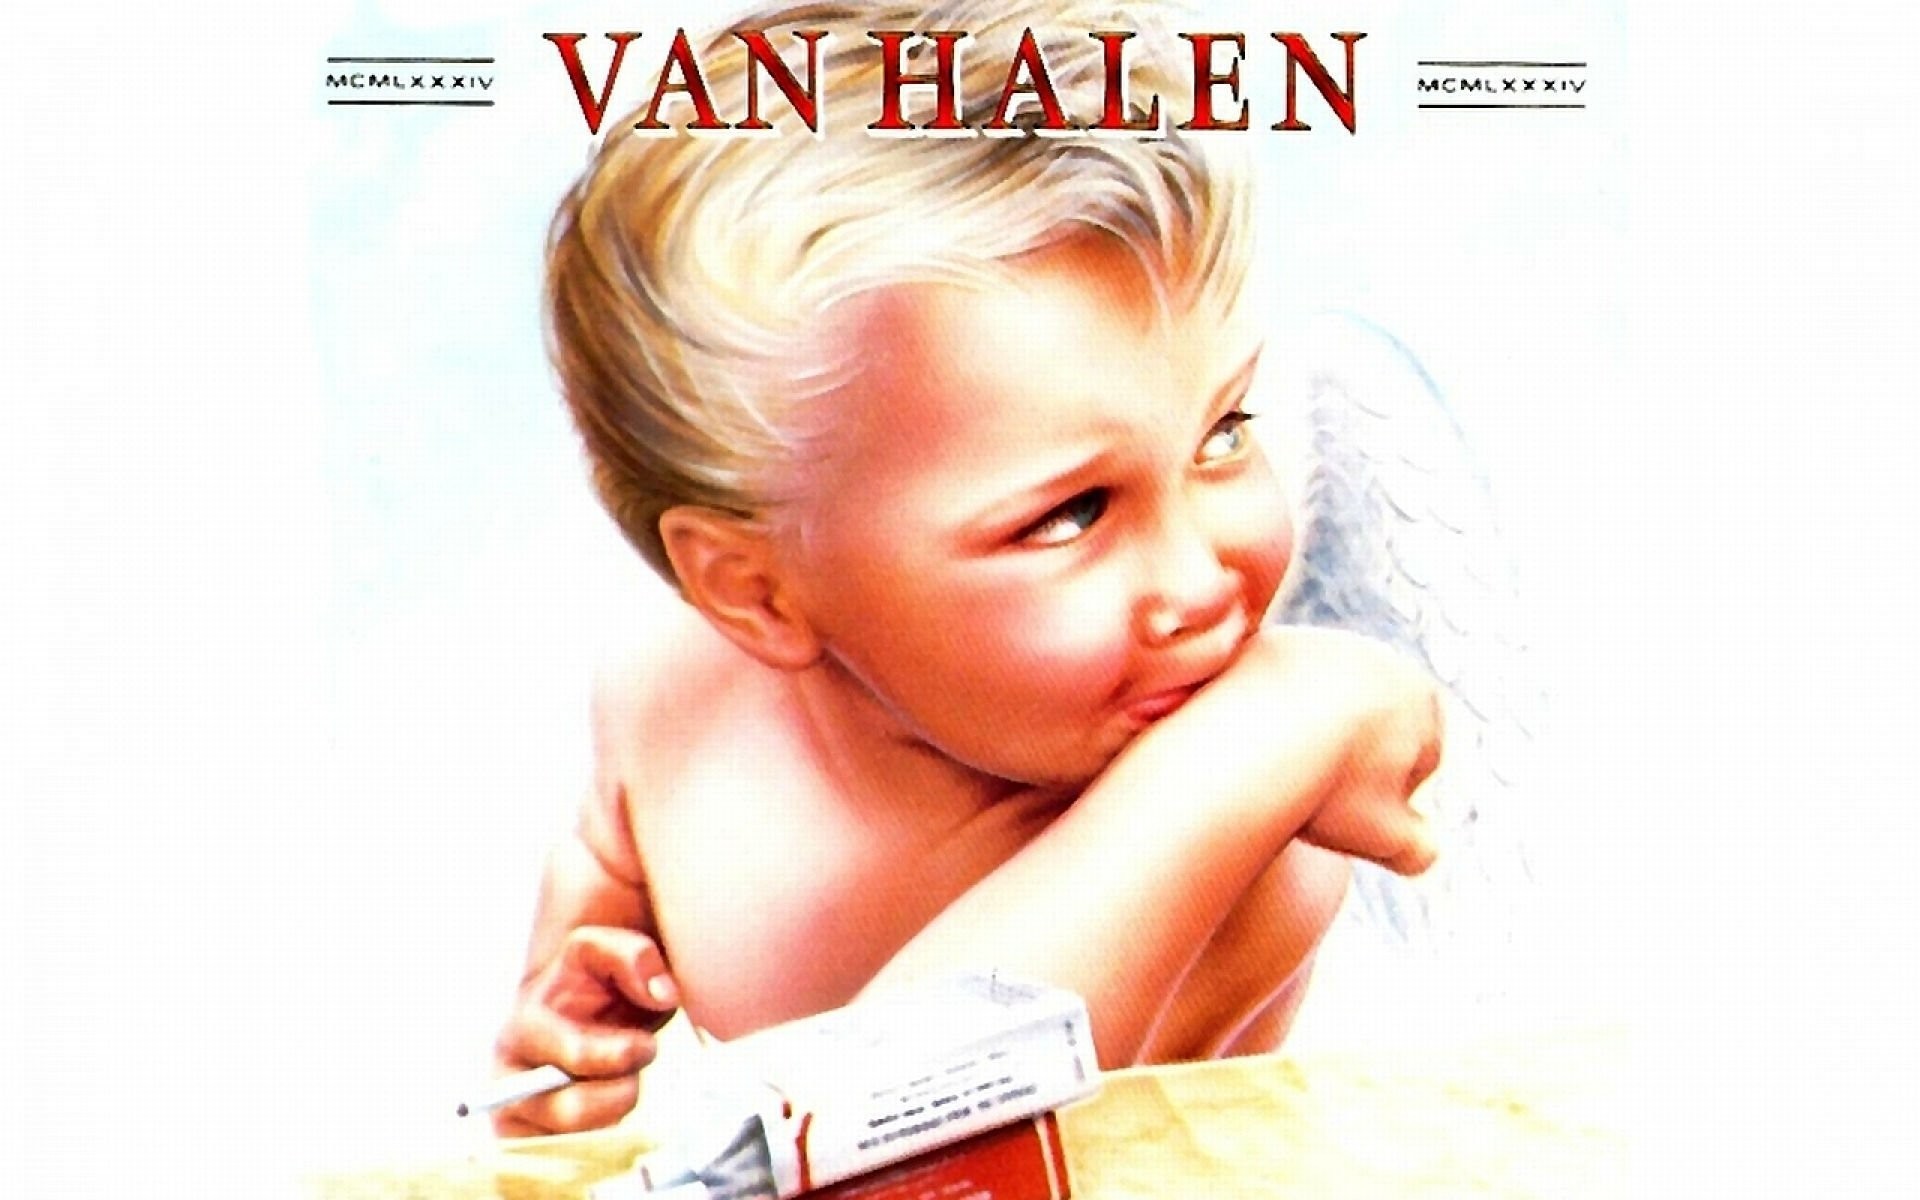 1920x1200  VAN HALEN hard rock heavy metal classic poster baby wallpaper |   | 366440 | WallpaperUP